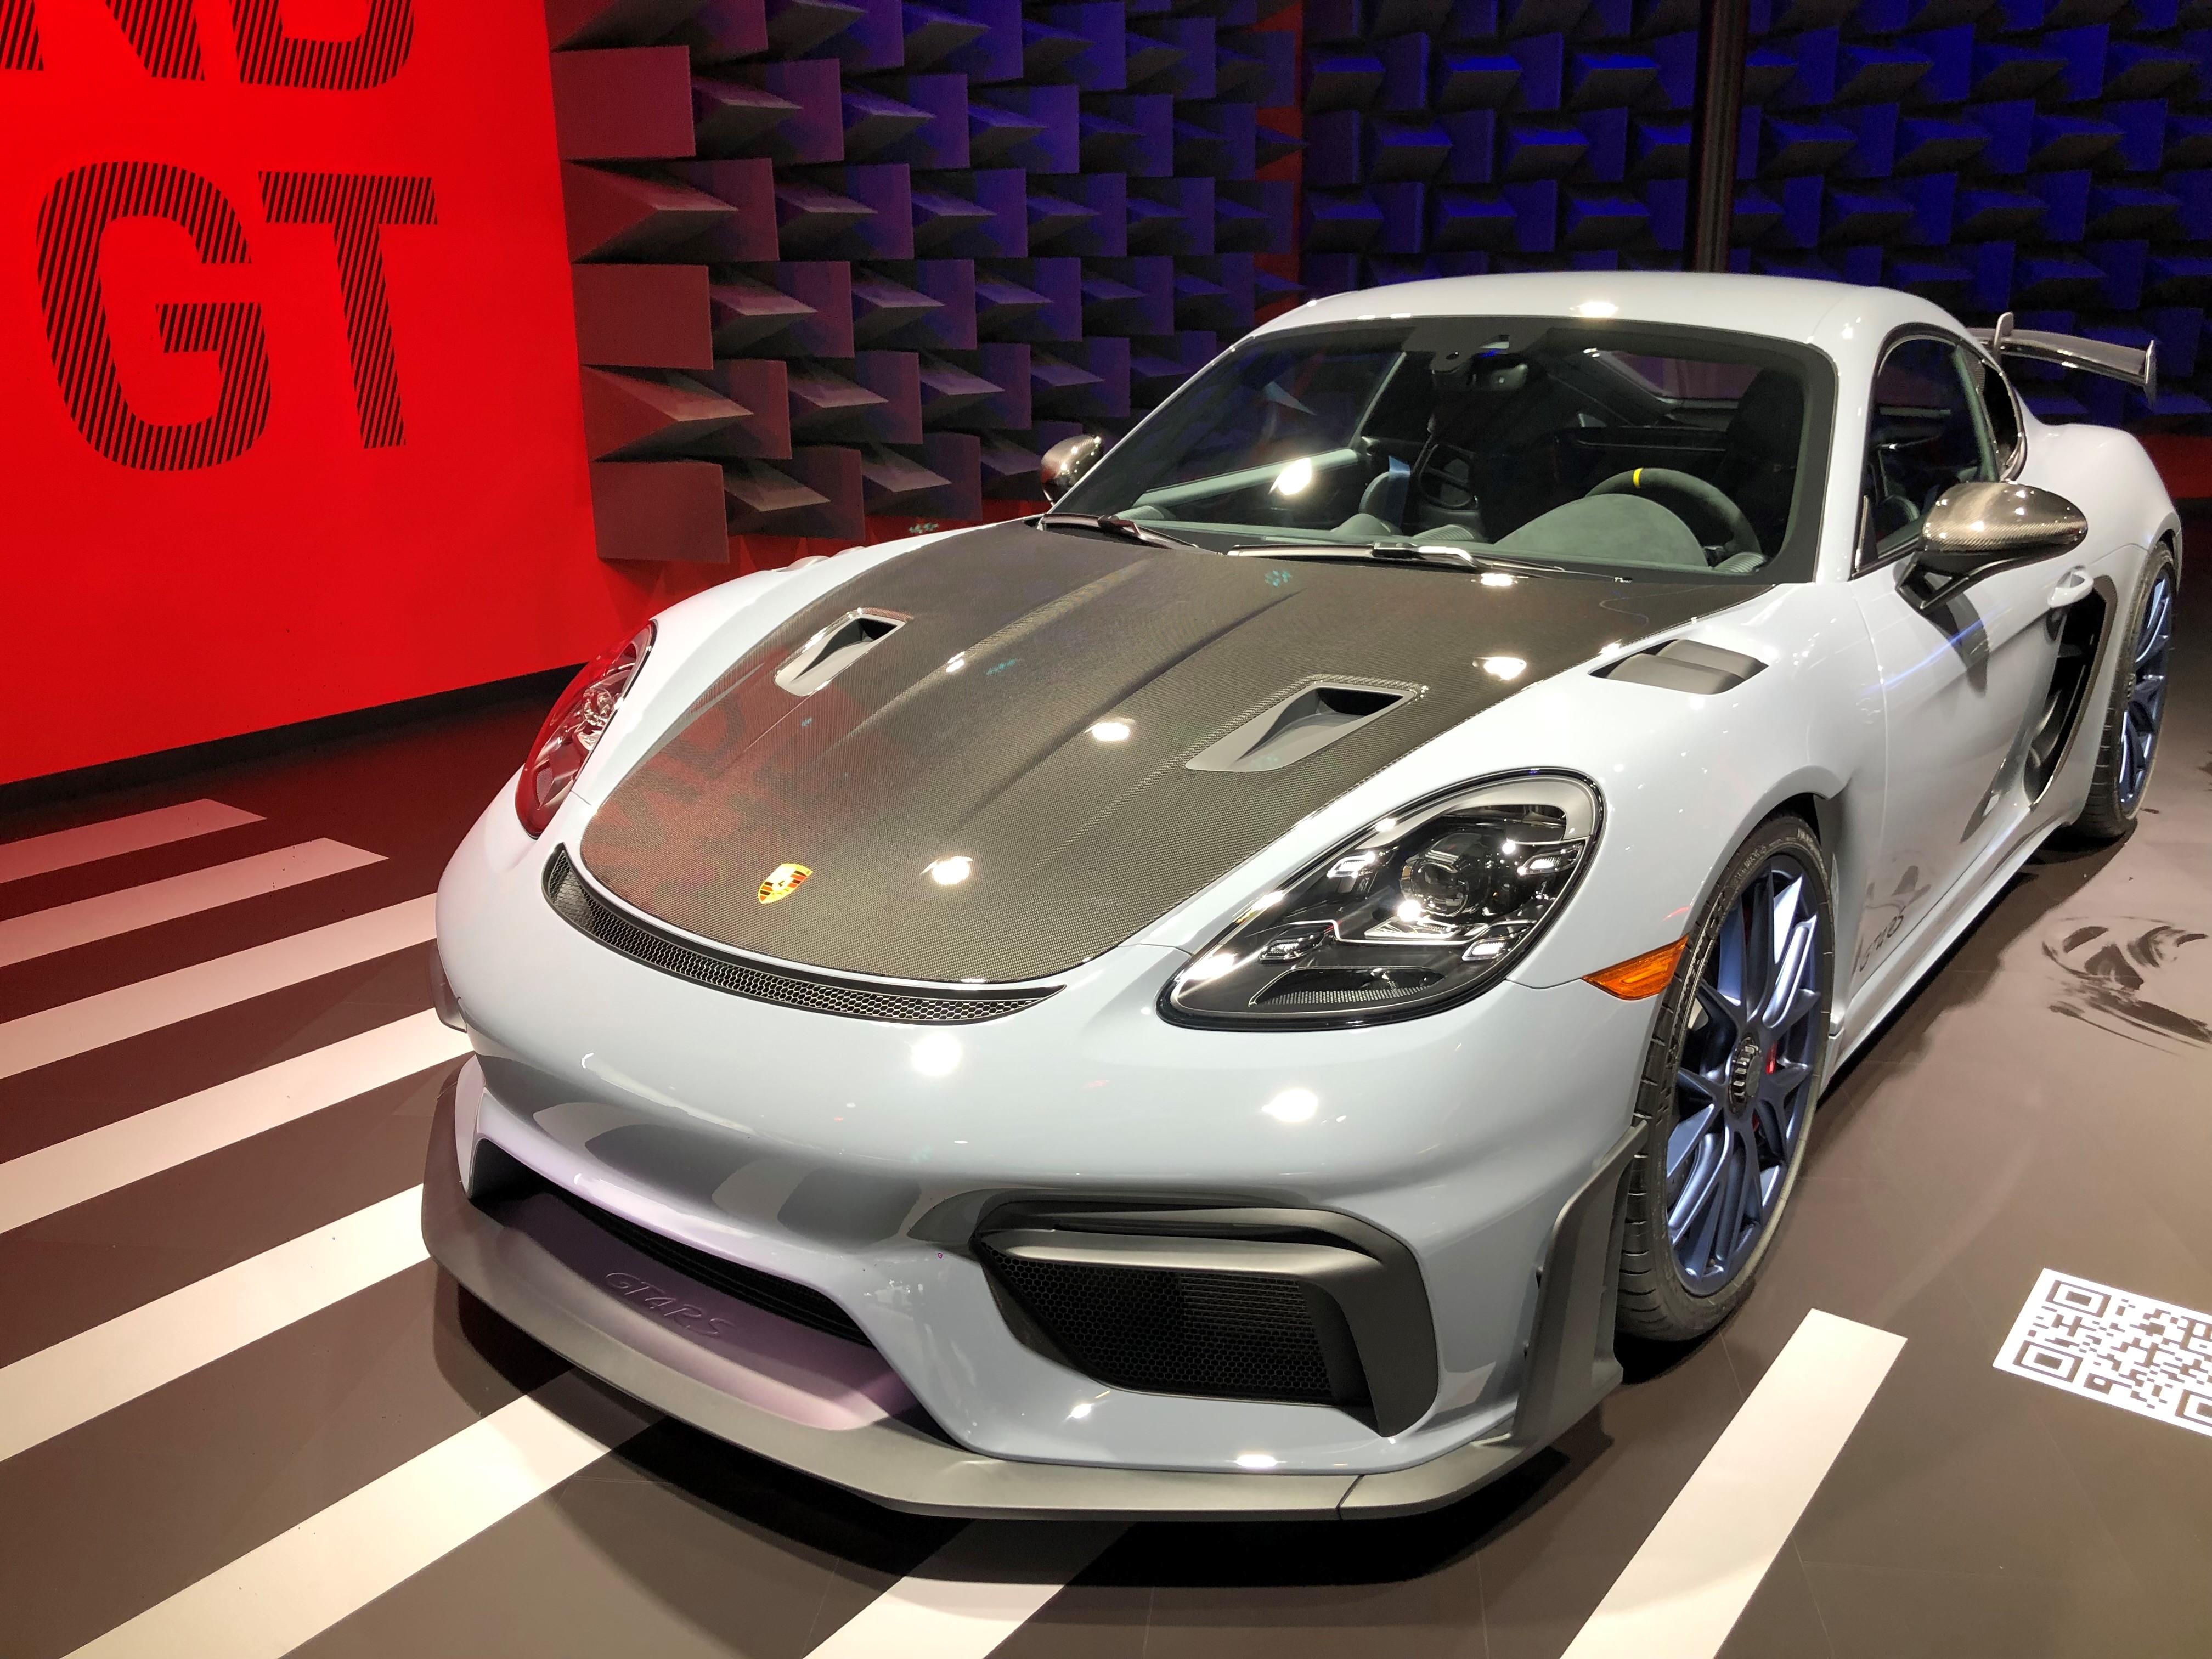 Porsche Club of America Event - Los Angeles Auto Show Porsche Club Preview